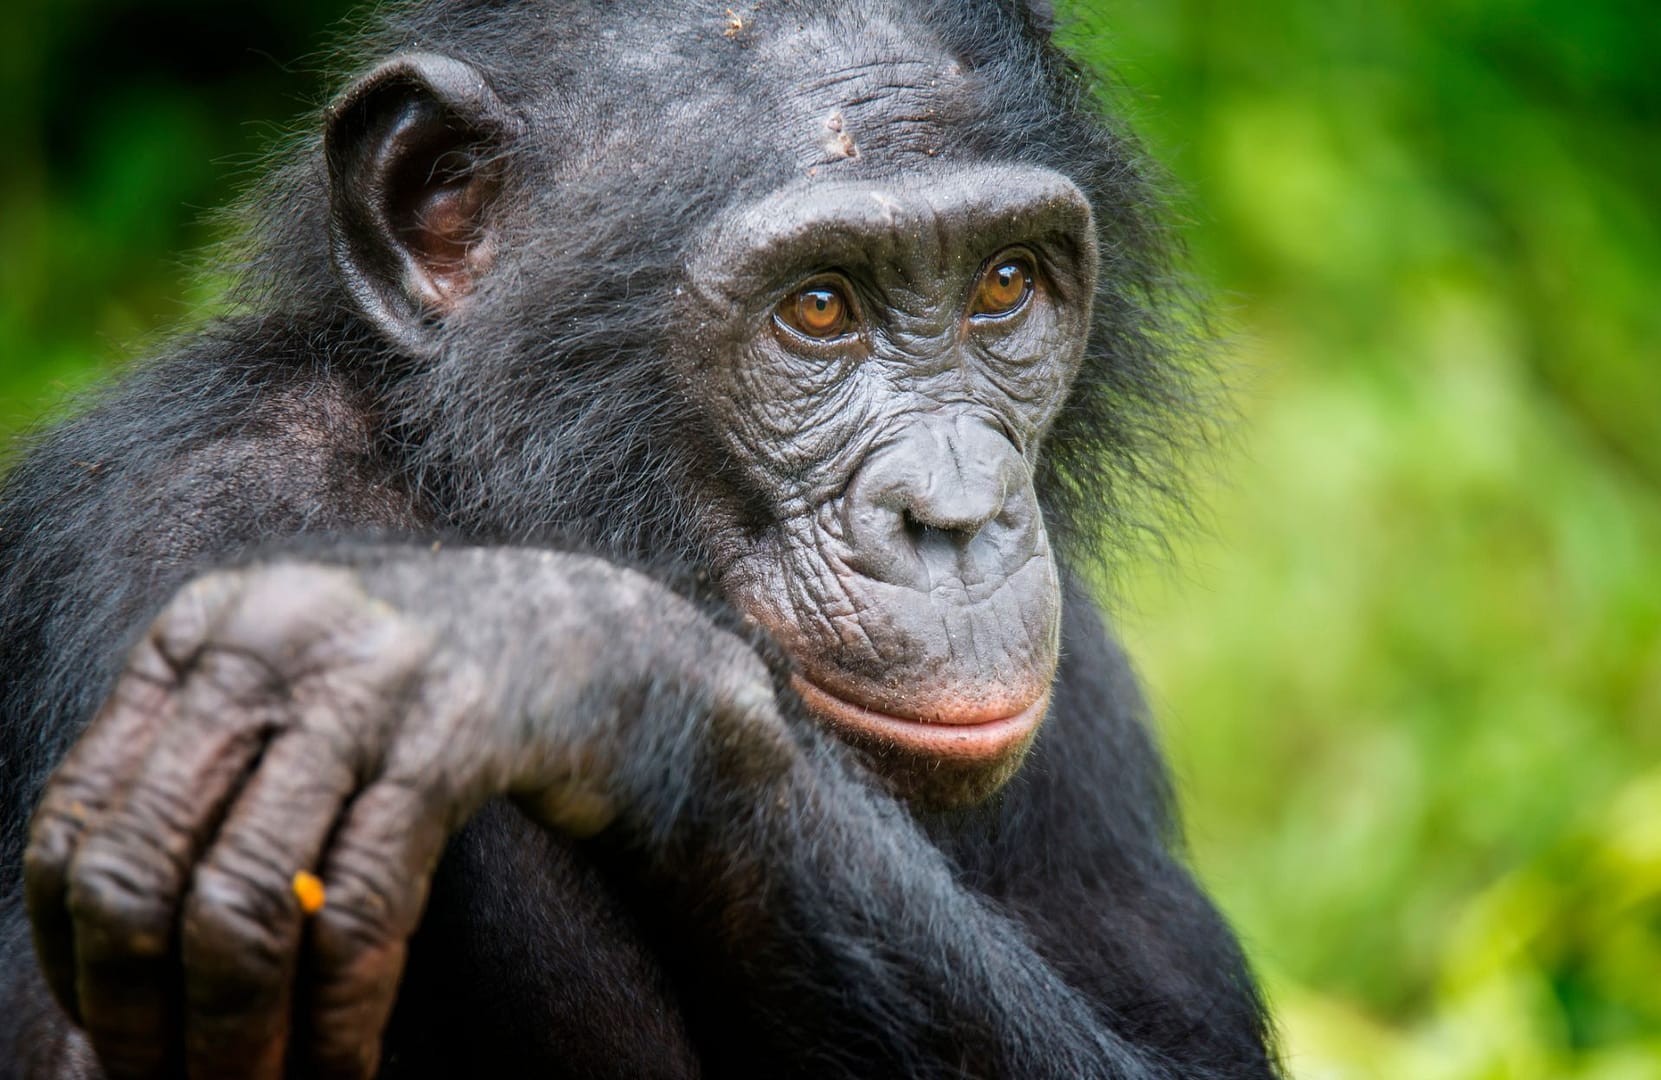 Les Femelles Chimpanzes Aussi Sont Menopausees Selon Une Etude.jpg